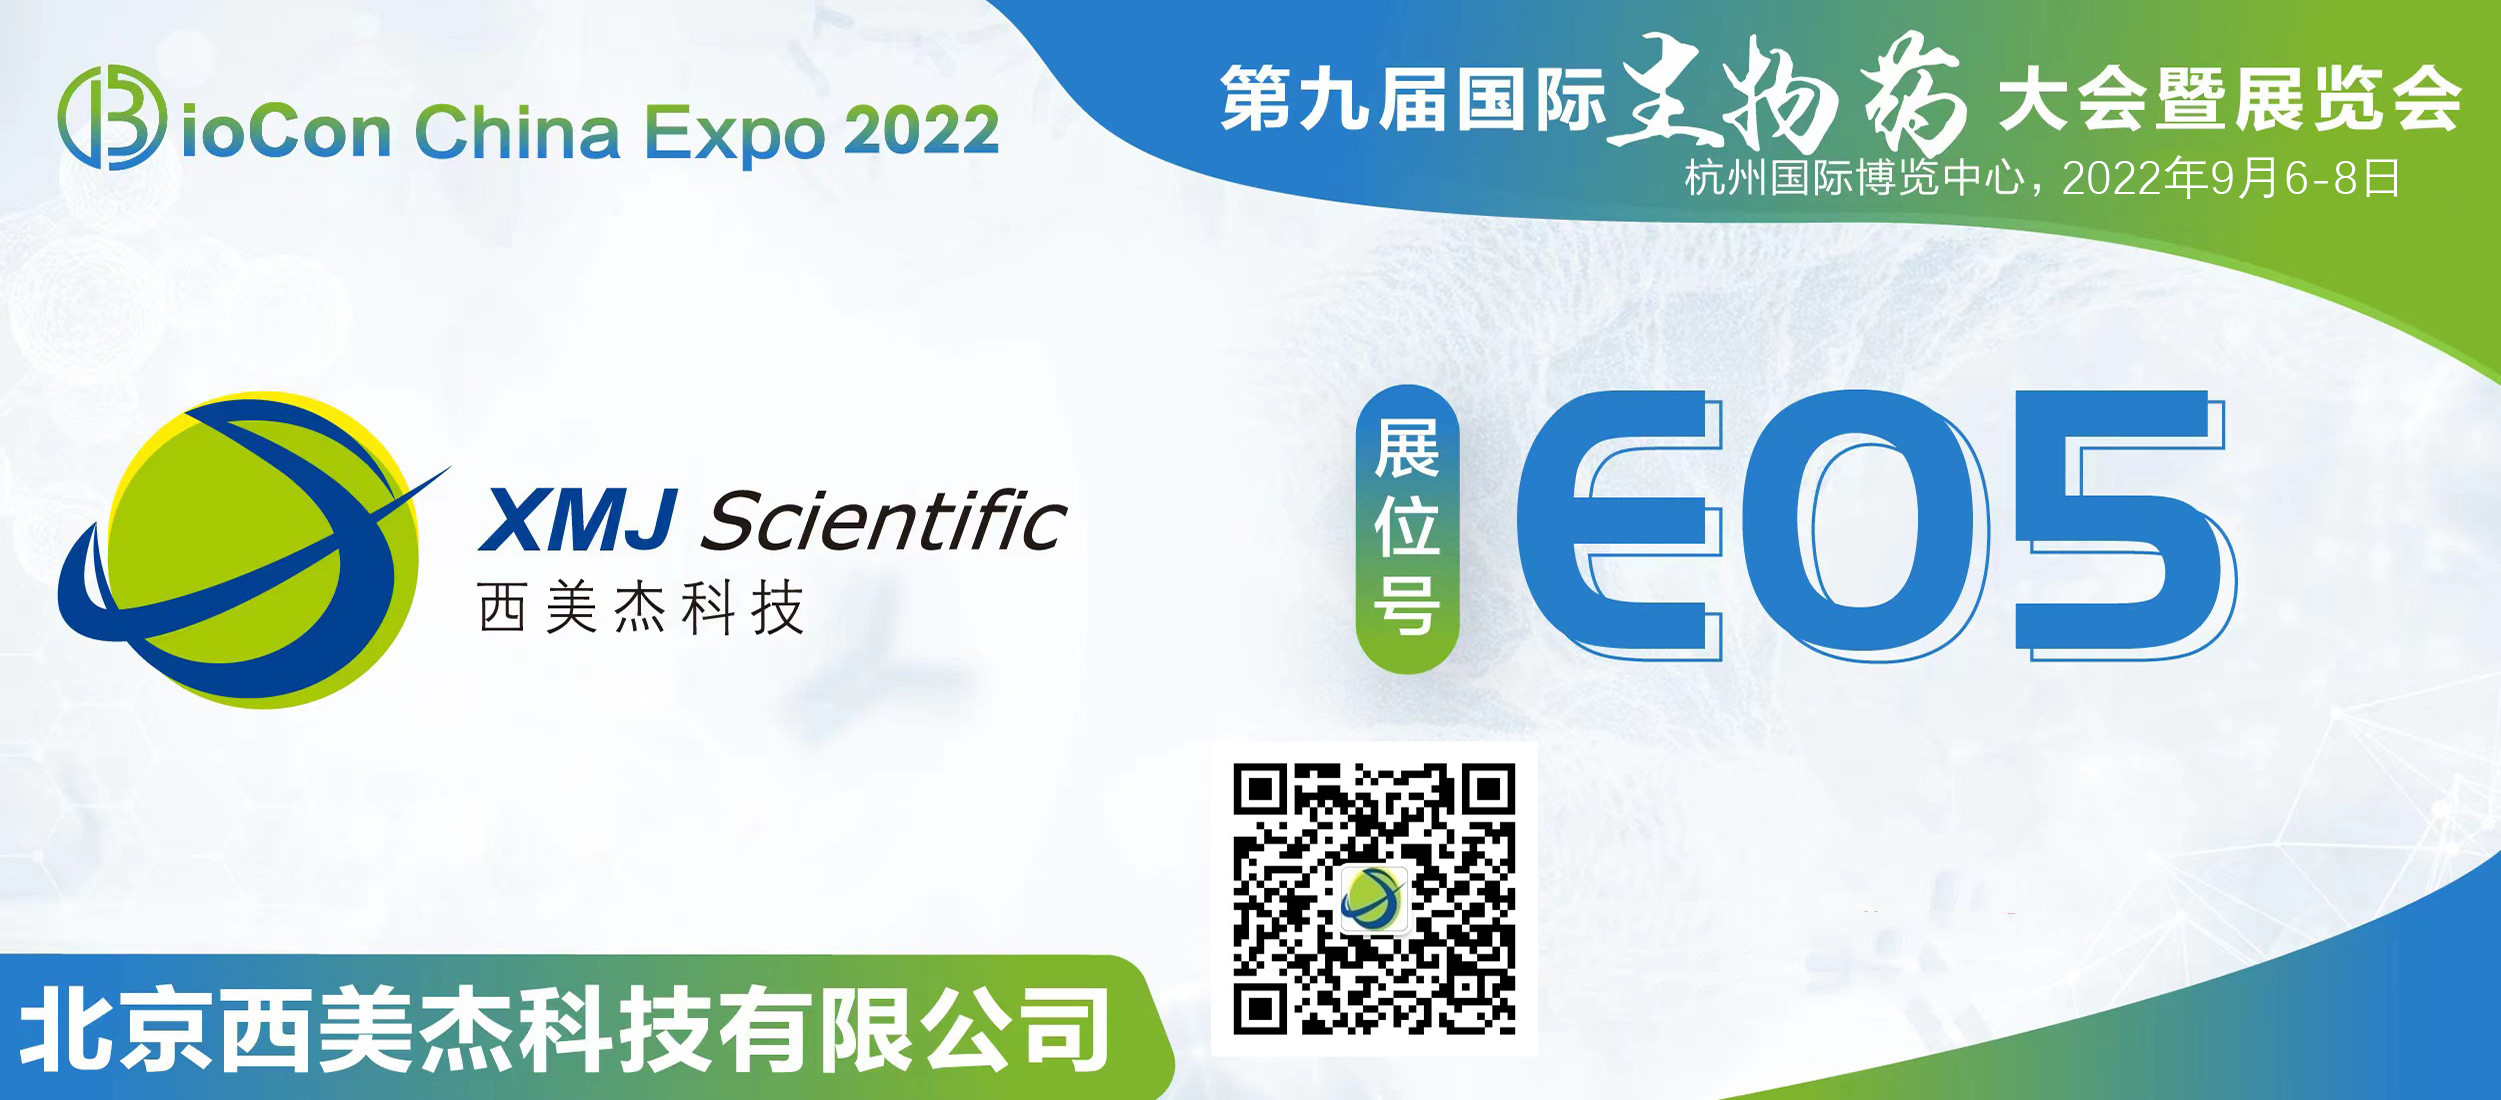 邀您参加第九届国际生物药大会暨展览会BioCon Expo 2022